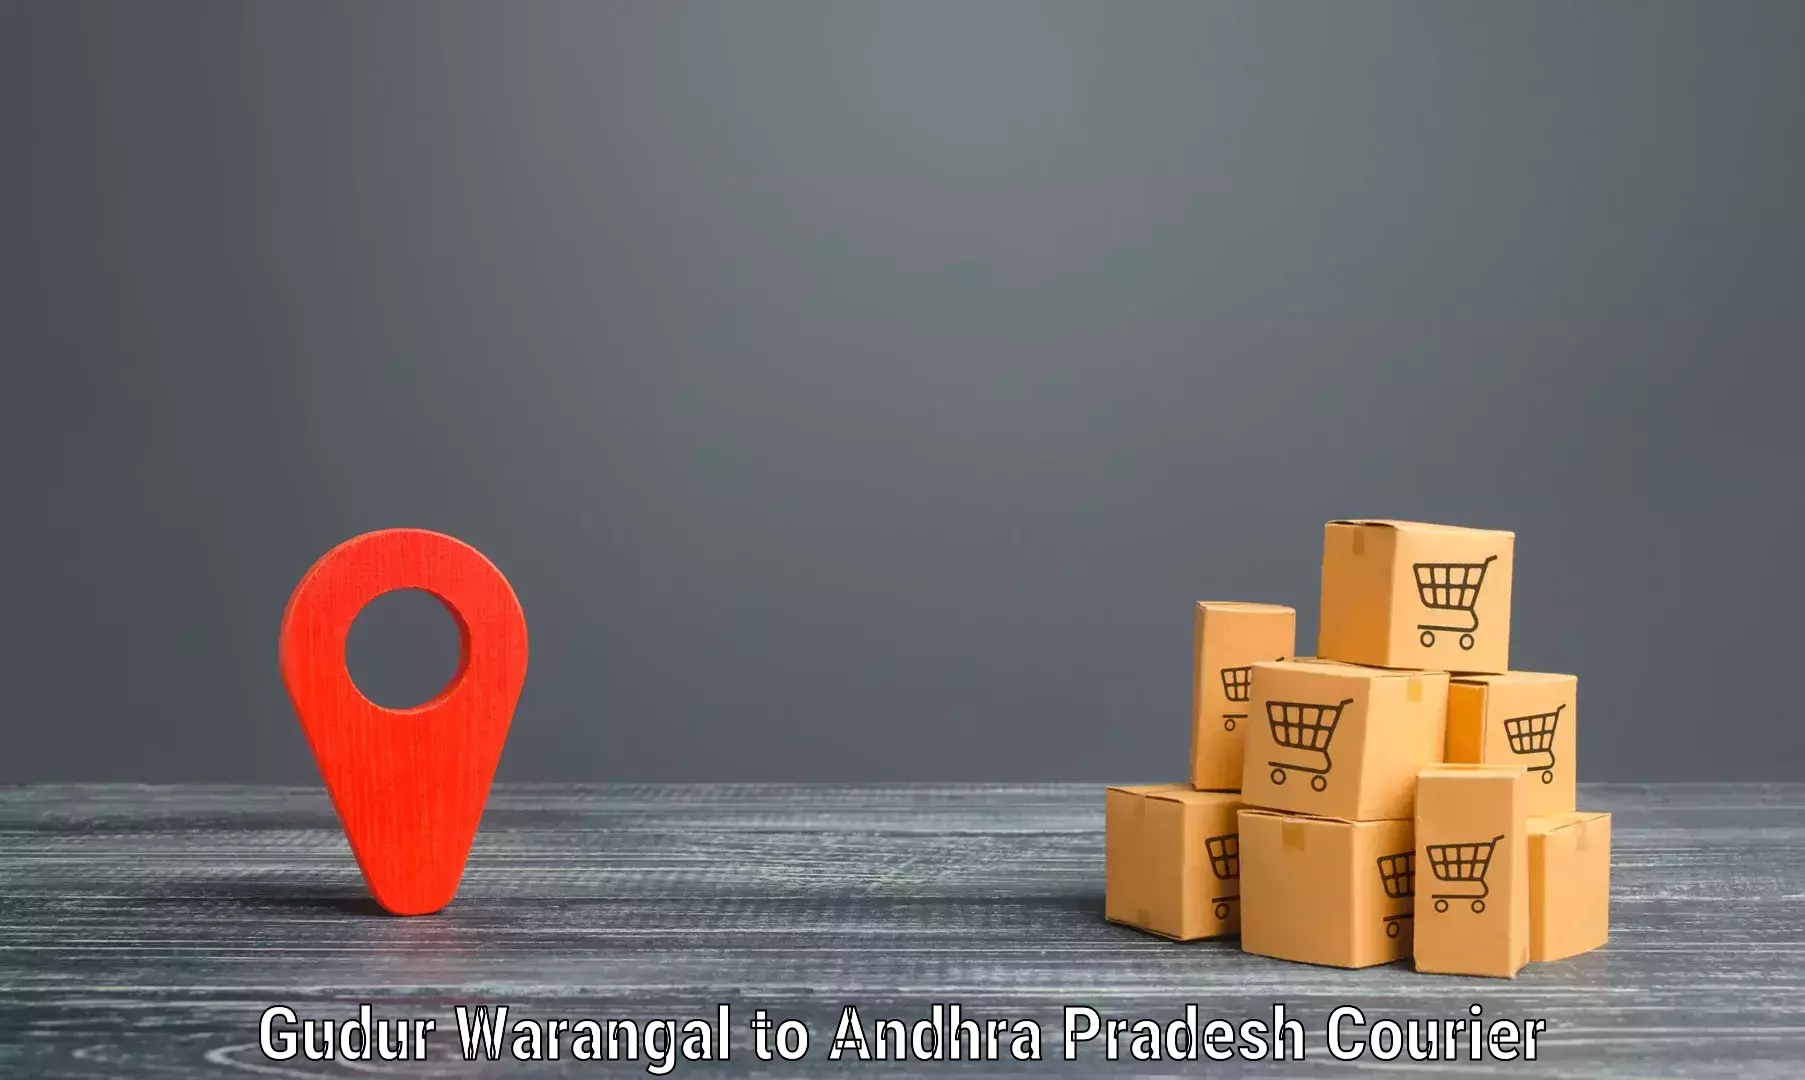 Package tracking in Gudur Warangal to Machilipatnam